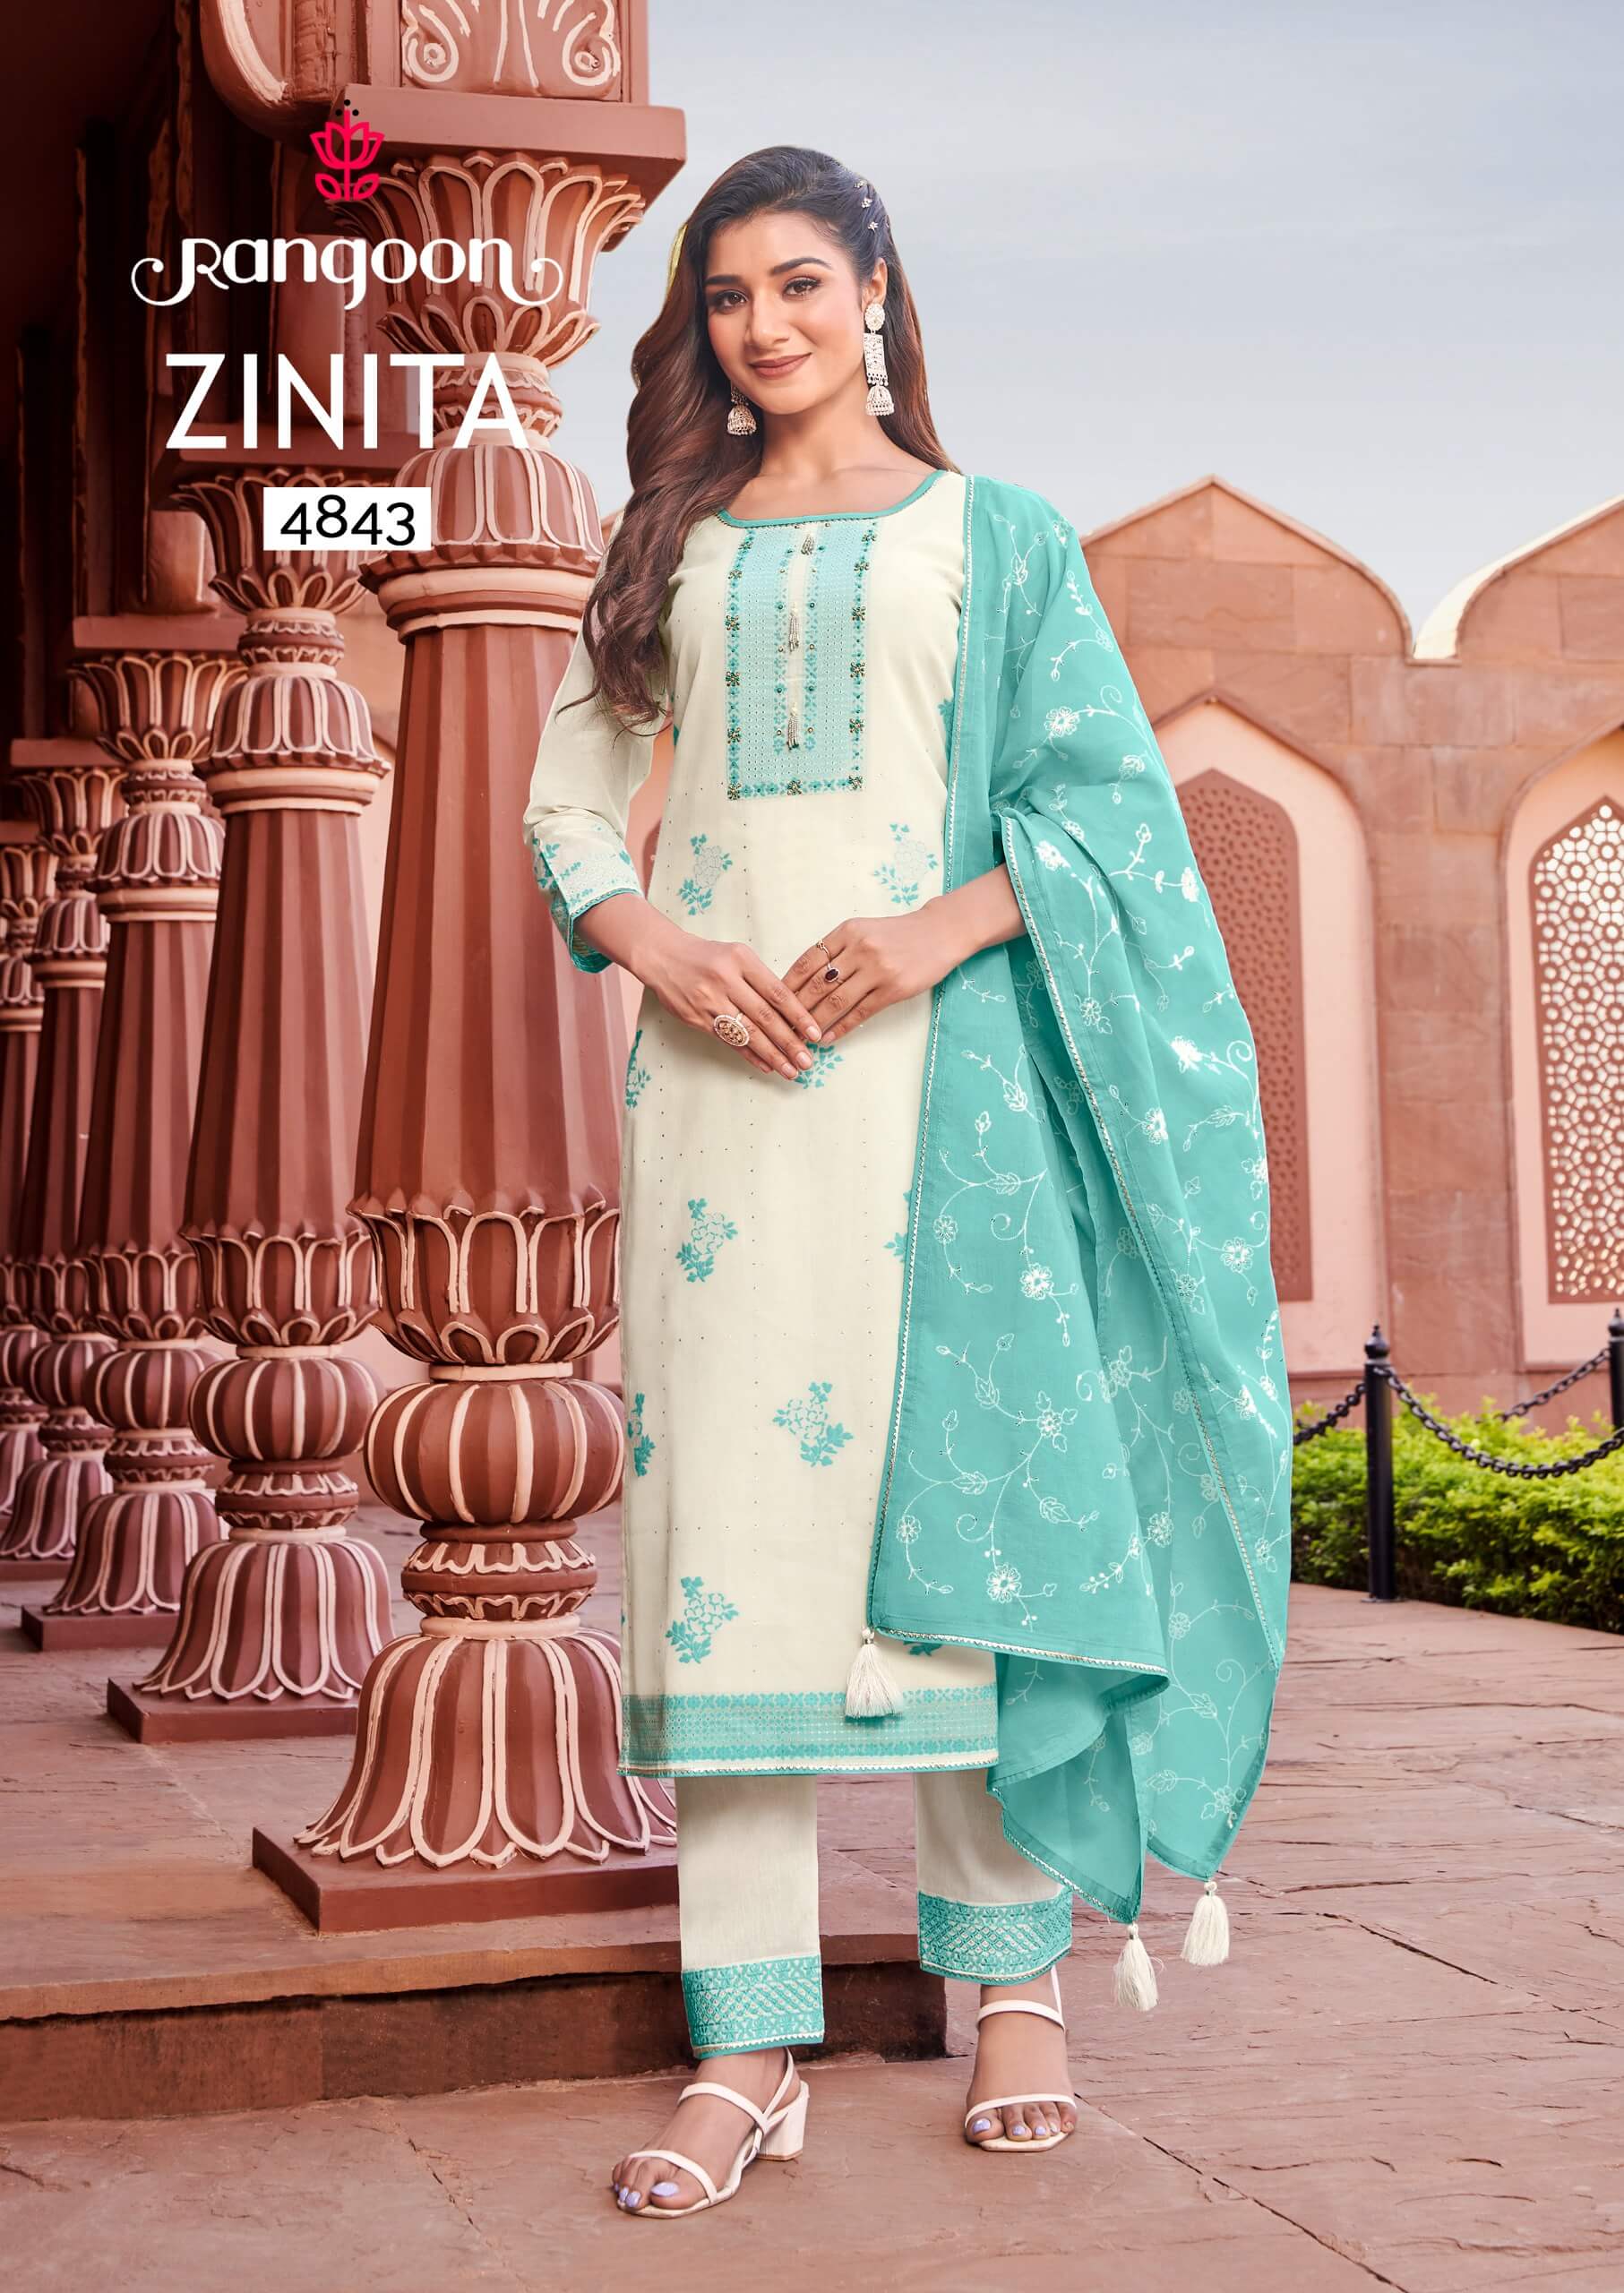 Rangoon Zinita Cotton Salwar Kameez Catalog at Wholesale Rate collection 3